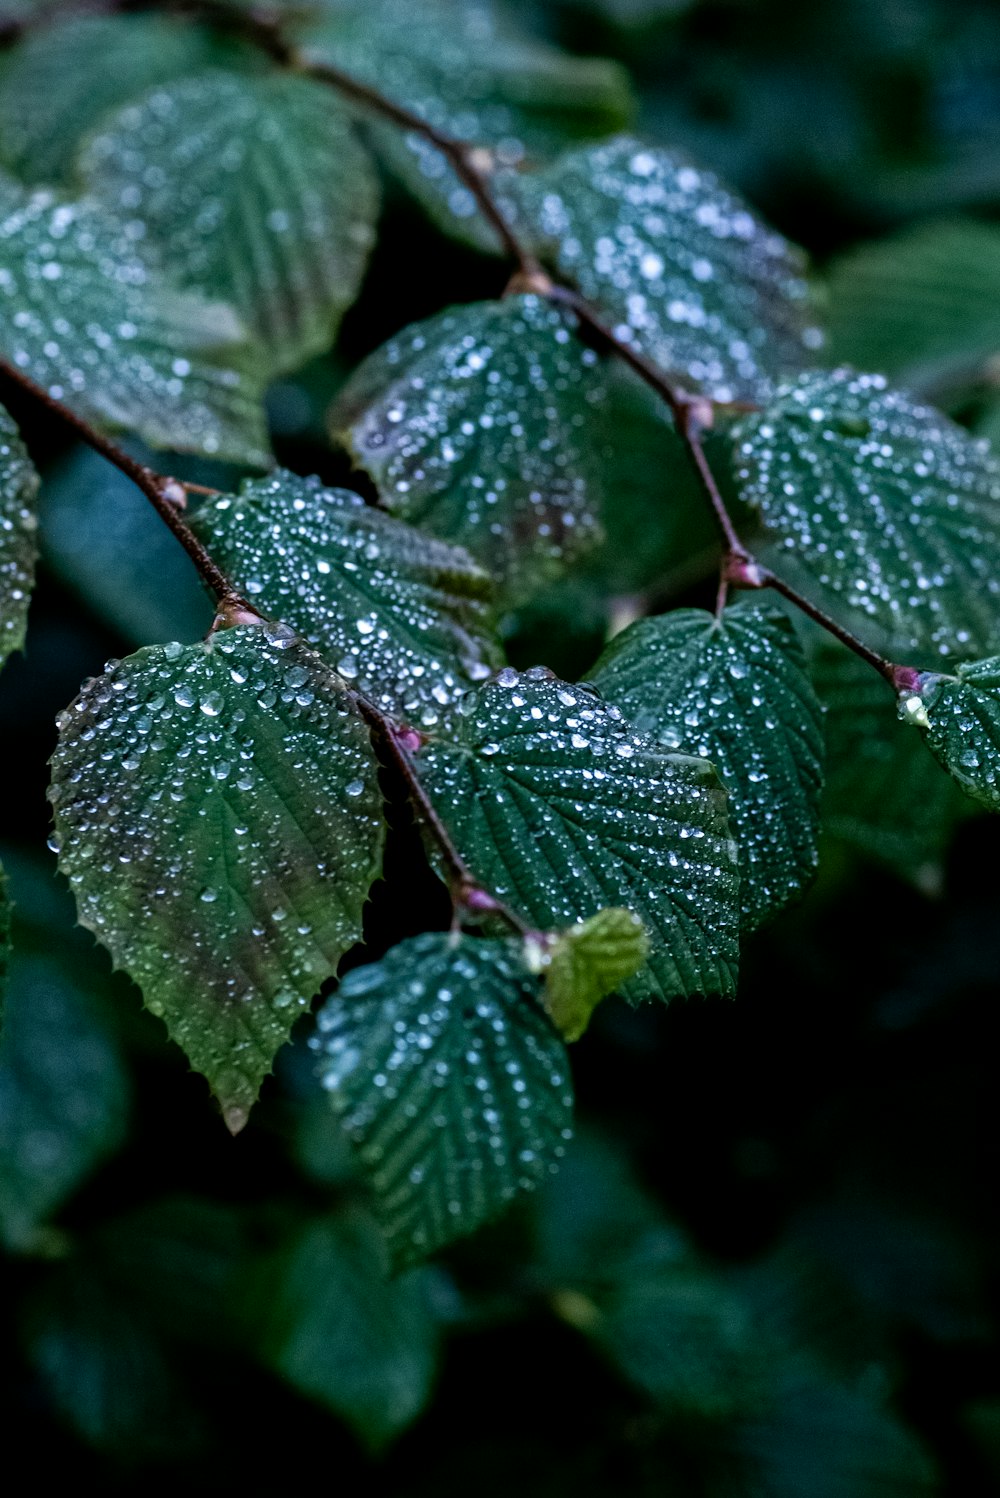 um close up de folhas com gotículas de água sobre elas